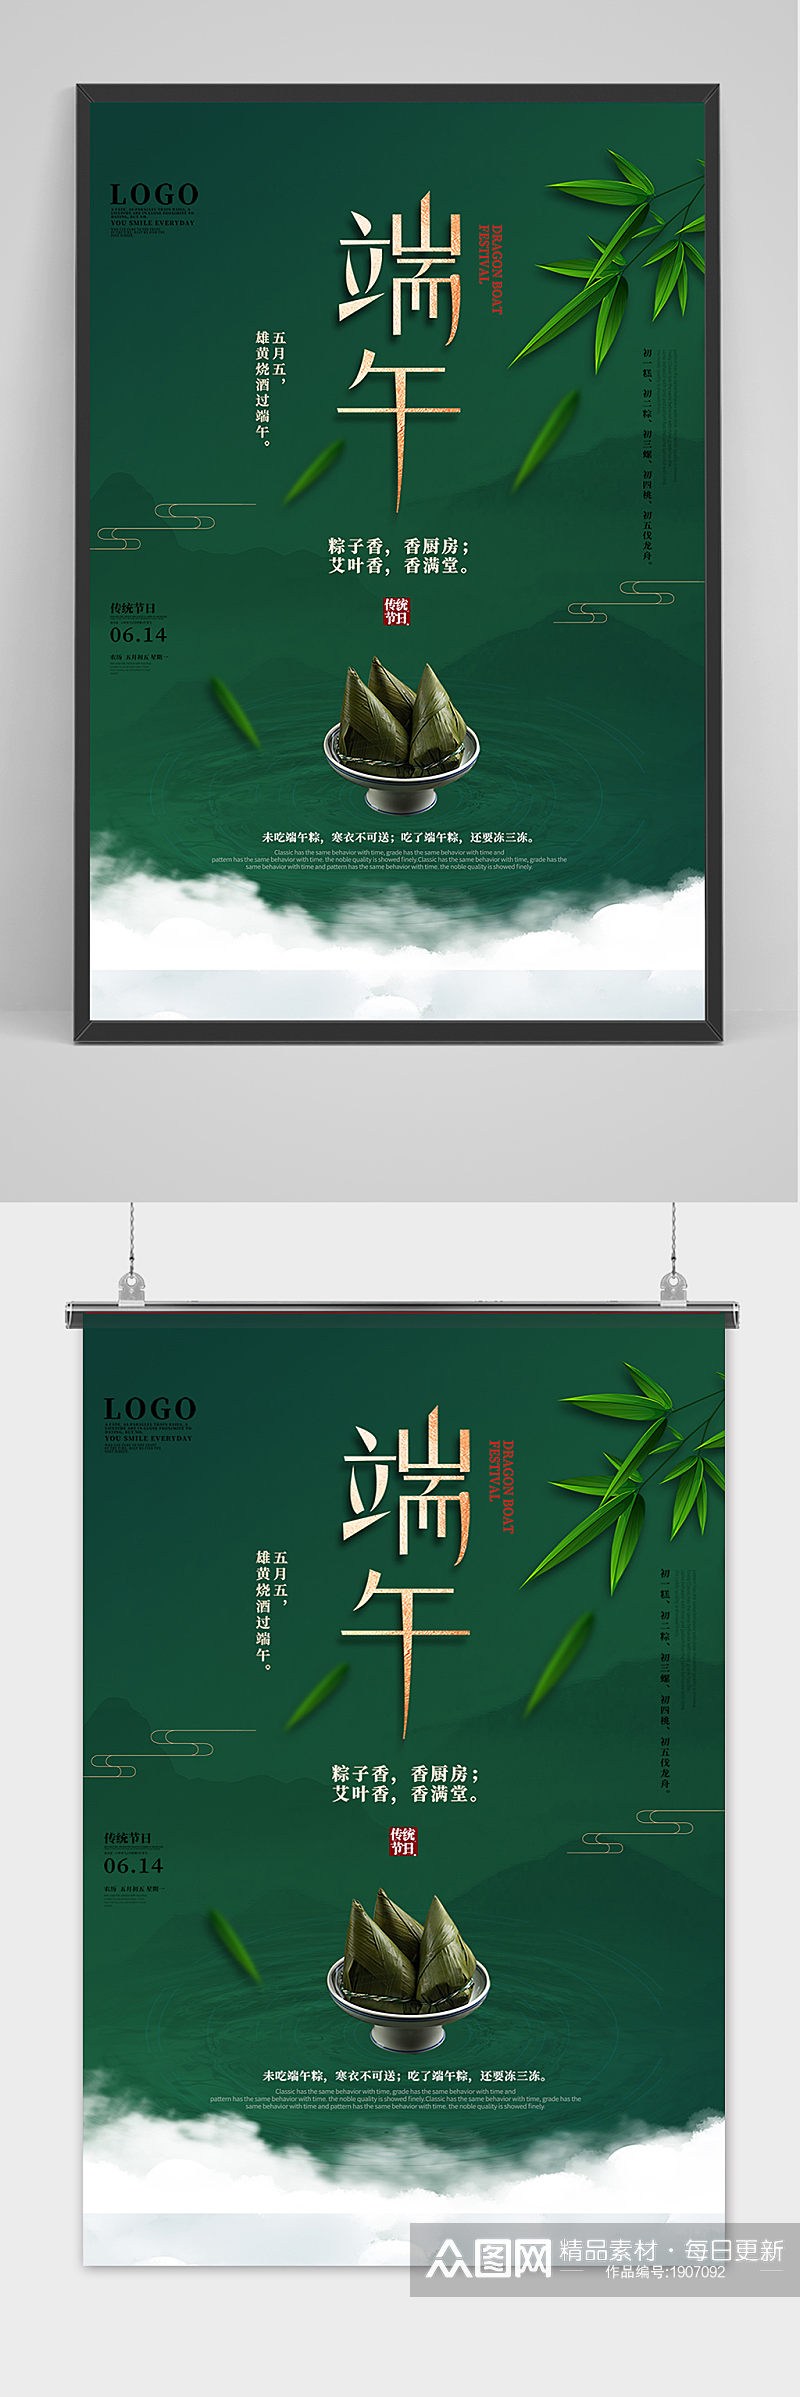 深绿色手绘清新端午节中国风海报素材